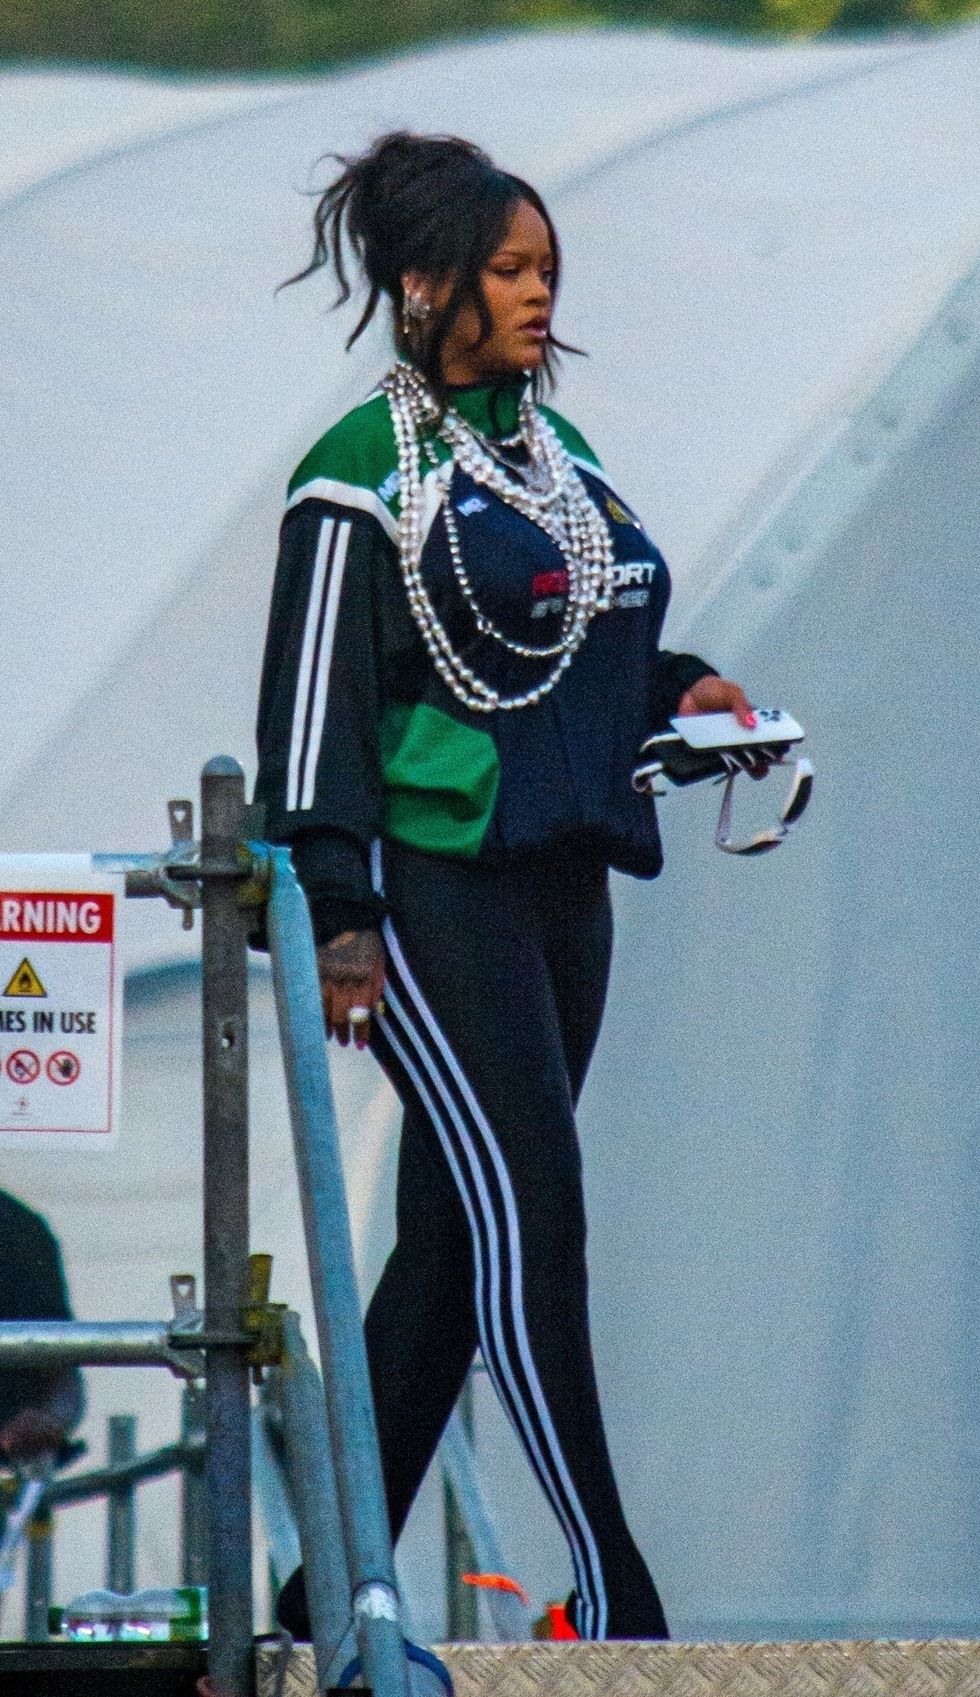 Rihanna's Green Balenciaga Sneakers